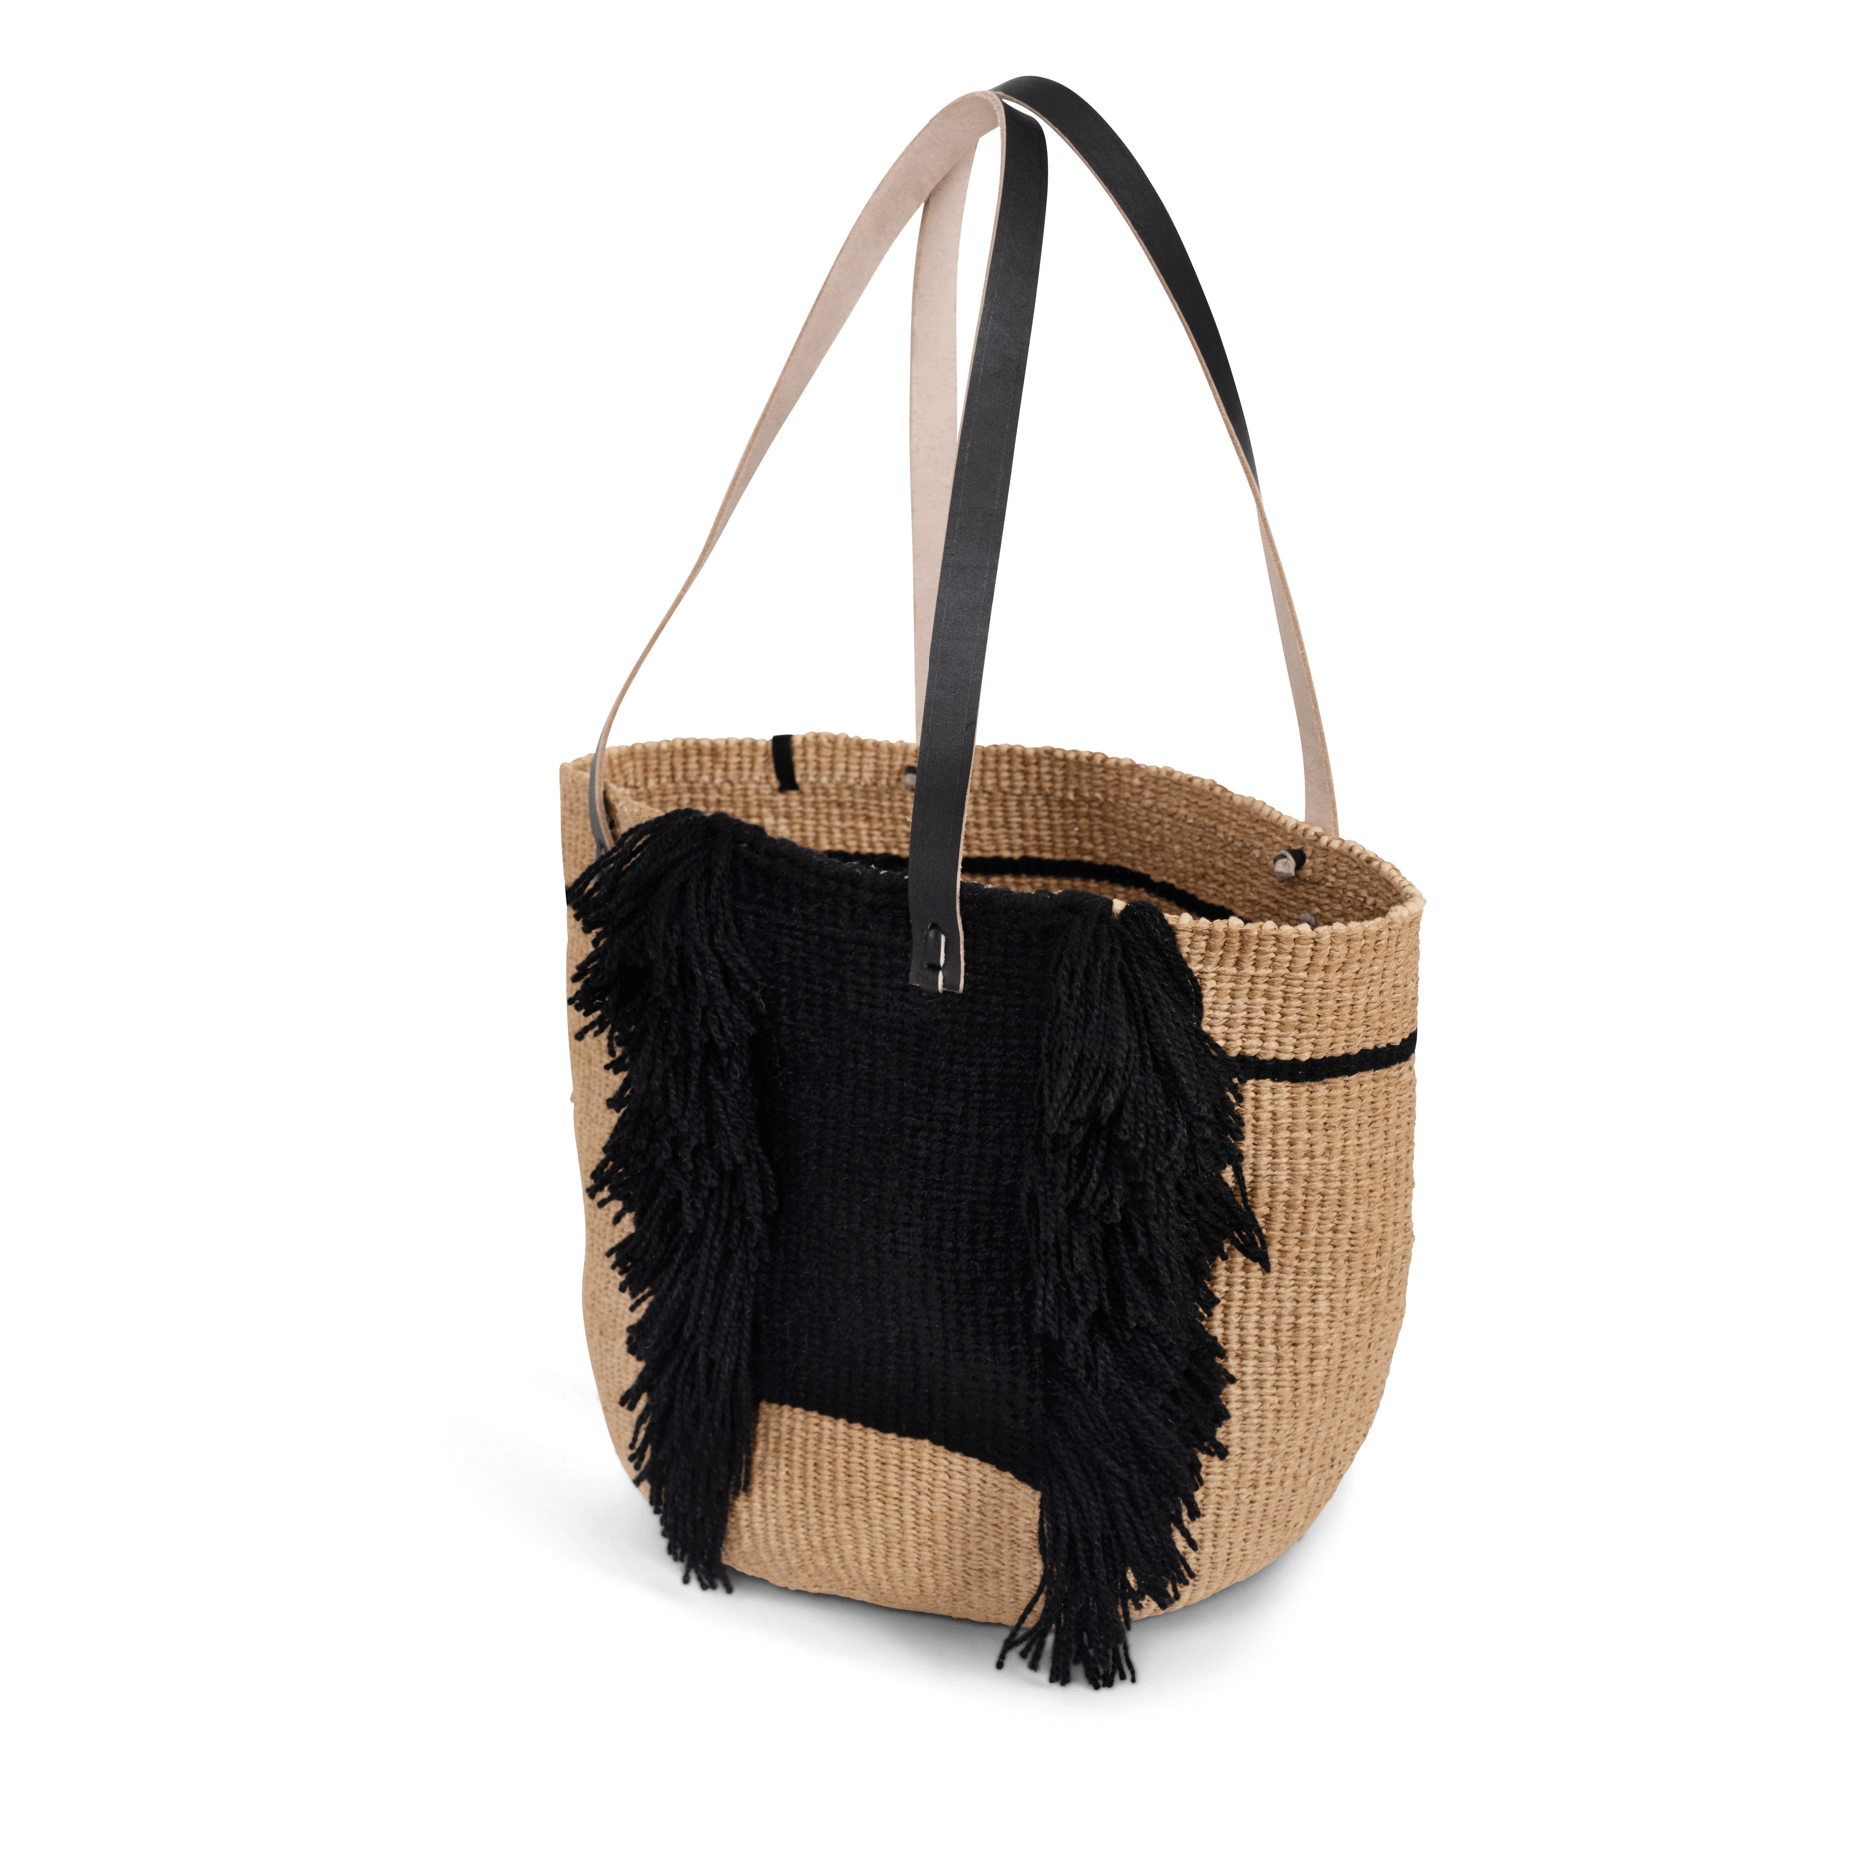 Pamba shopper basket | Ervin Latimer design black M